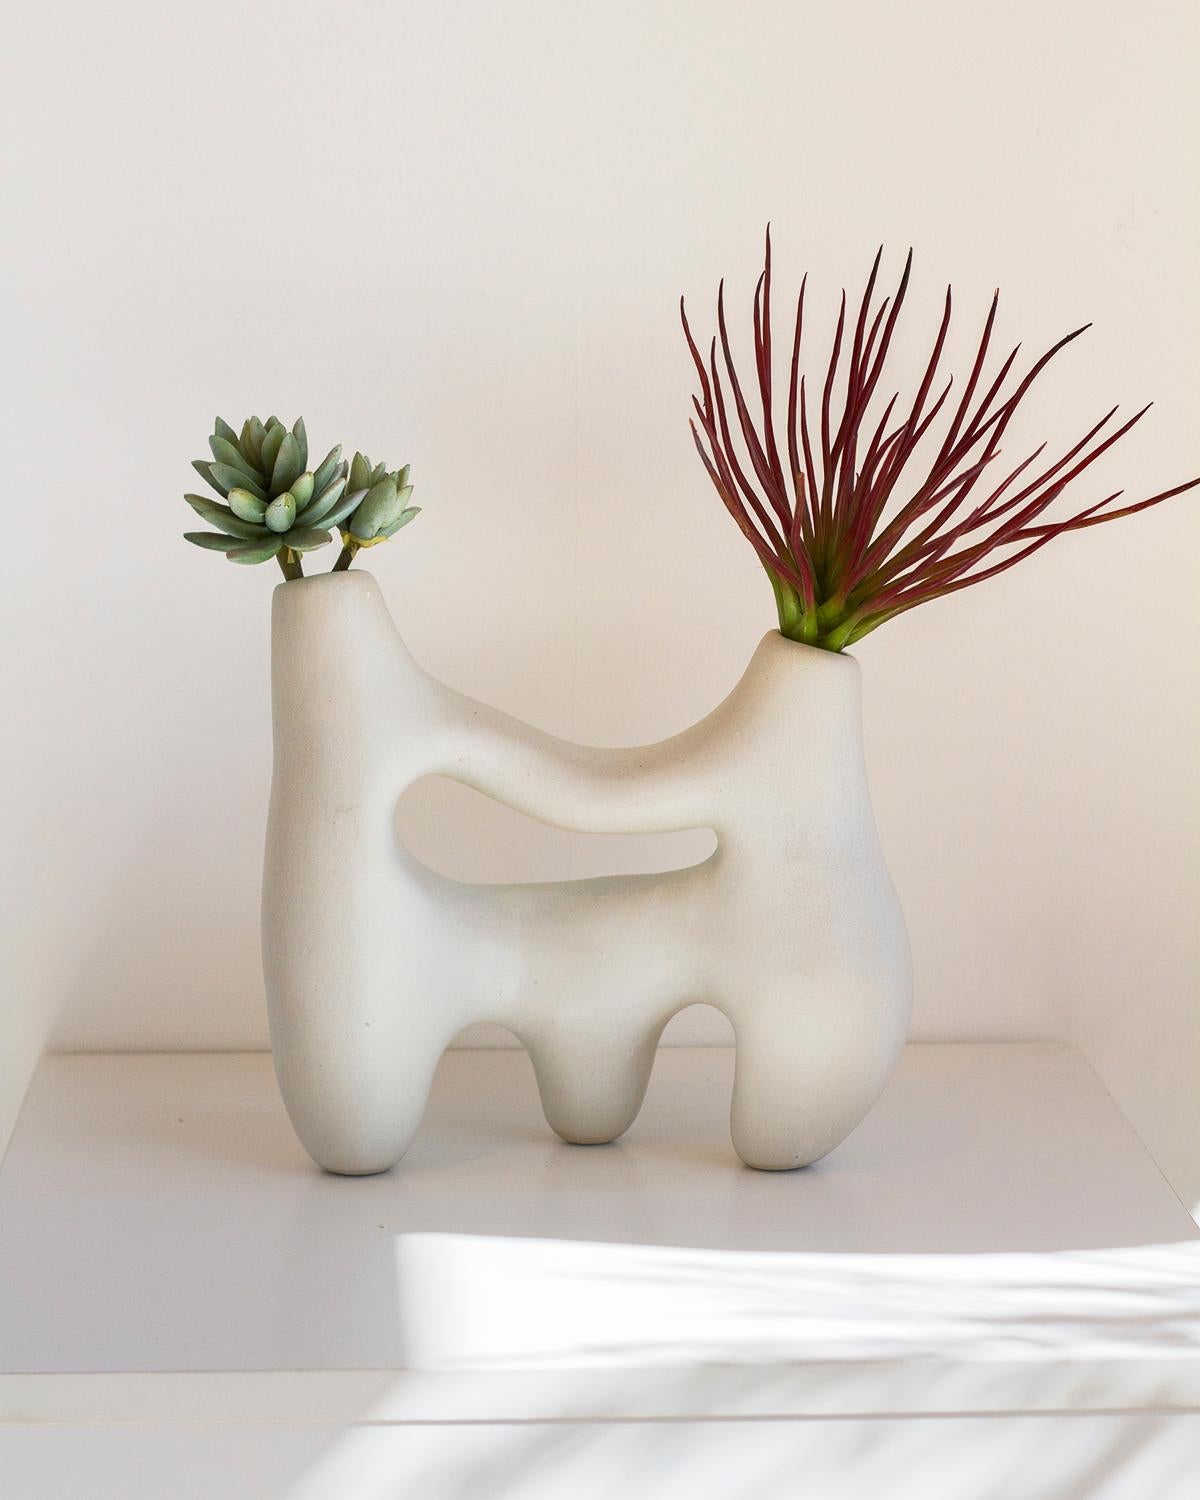 Ce vase en argile Symbiosis est un vase sculptural unique en argile blanche. Son aspect à la fois rustique et minimaliste convient parfaitement aux décors organiques, modernes et futuristes. Fabriqué à la main avec soin, ce vase en os blanc